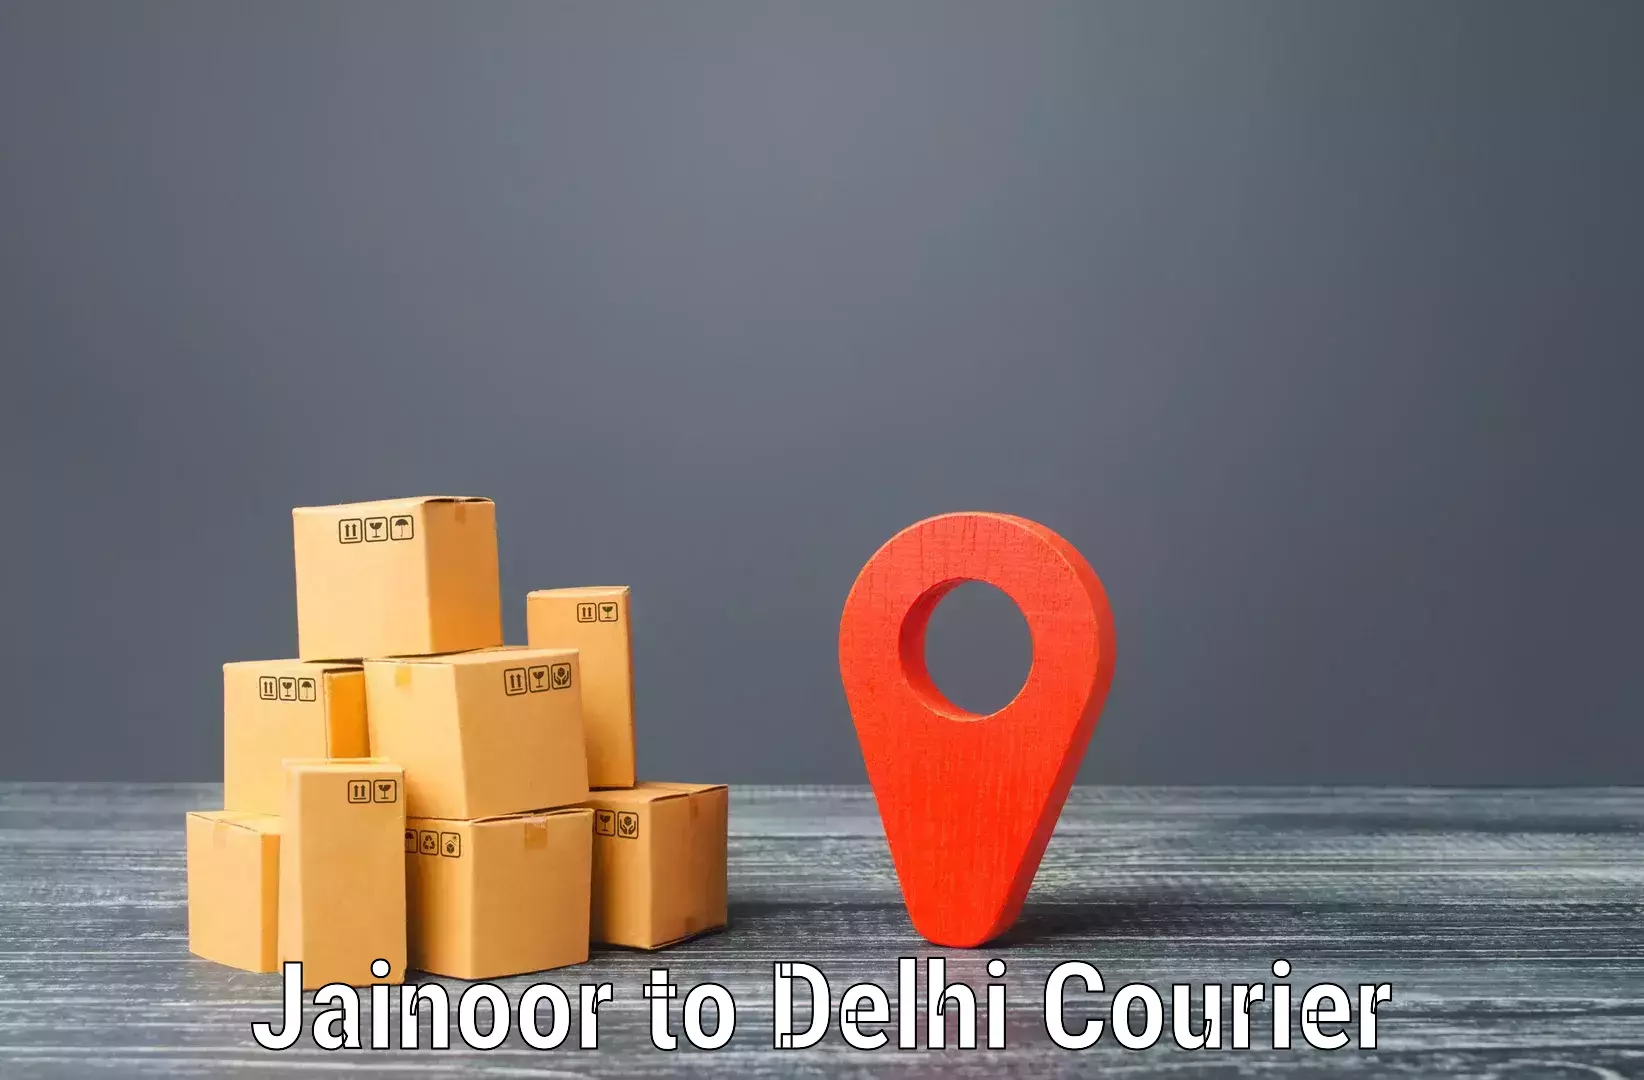 Ocean freight courier Jainoor to NCR